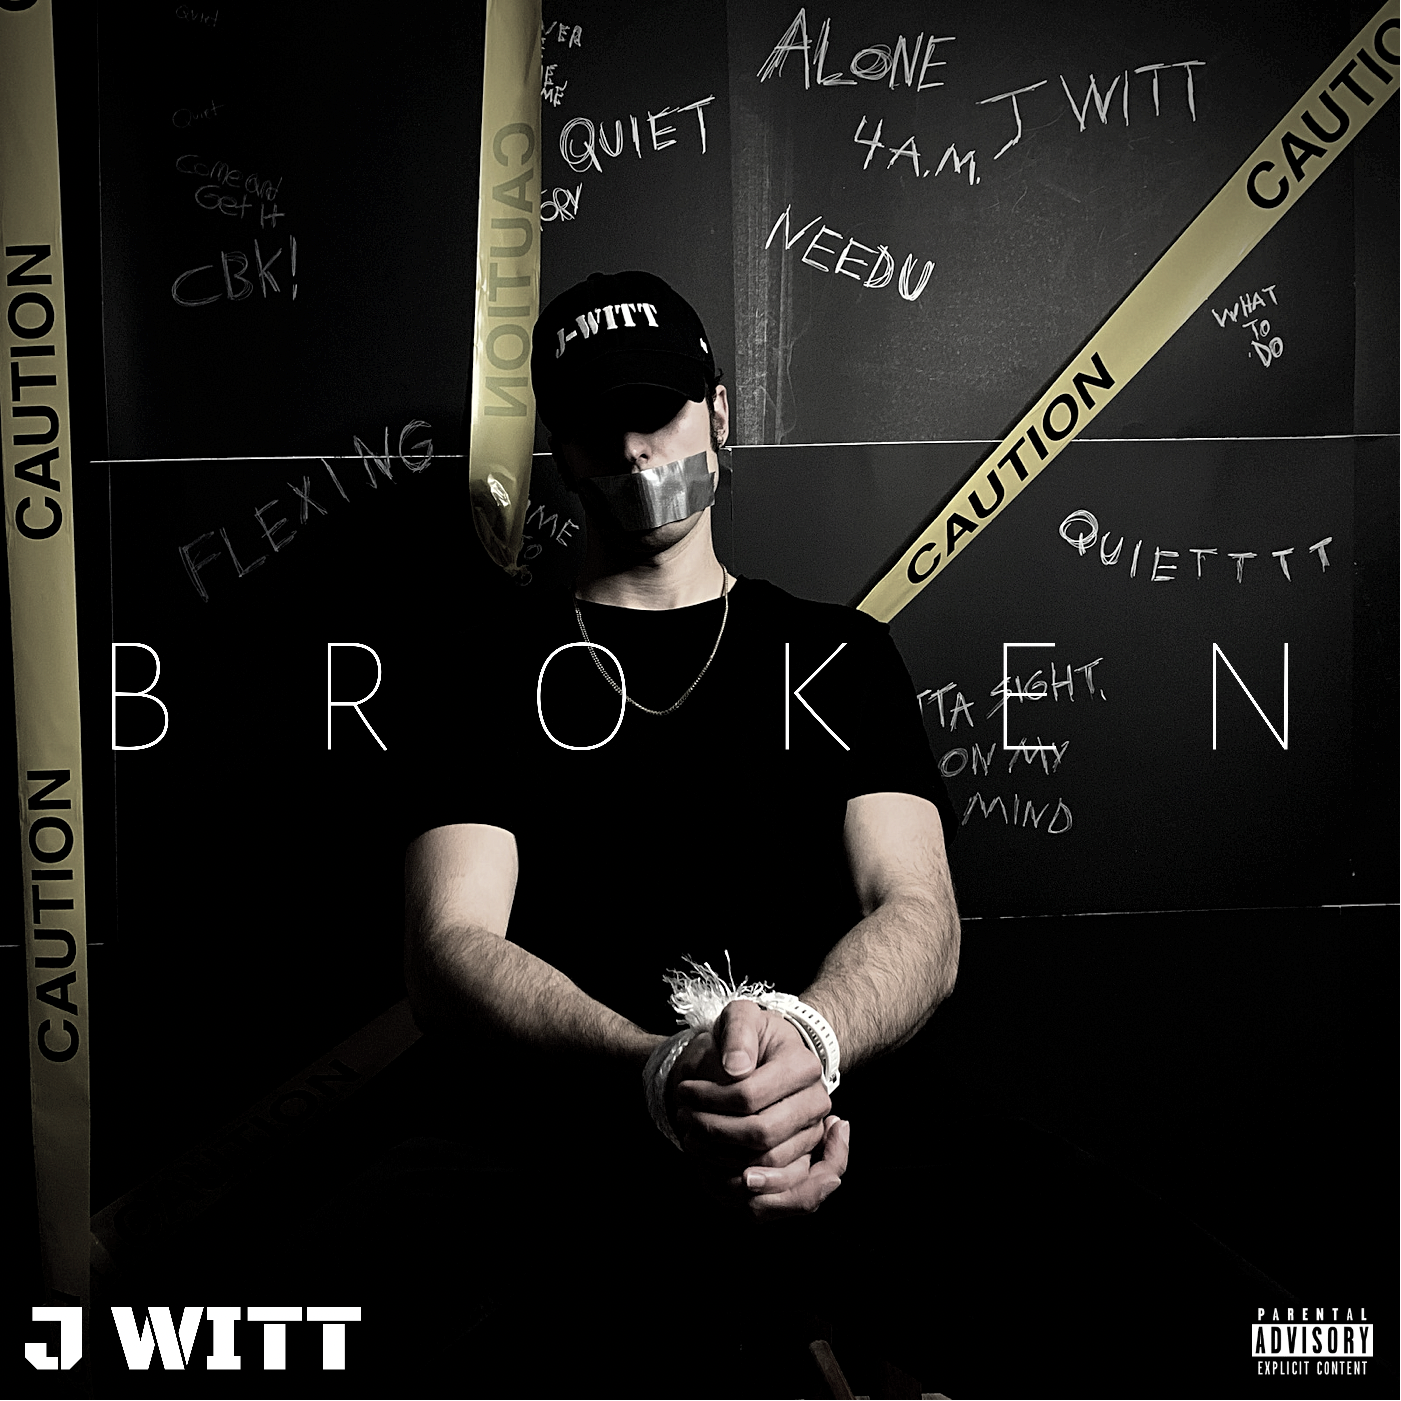 134-j-witt---broken-album-coverpng.png